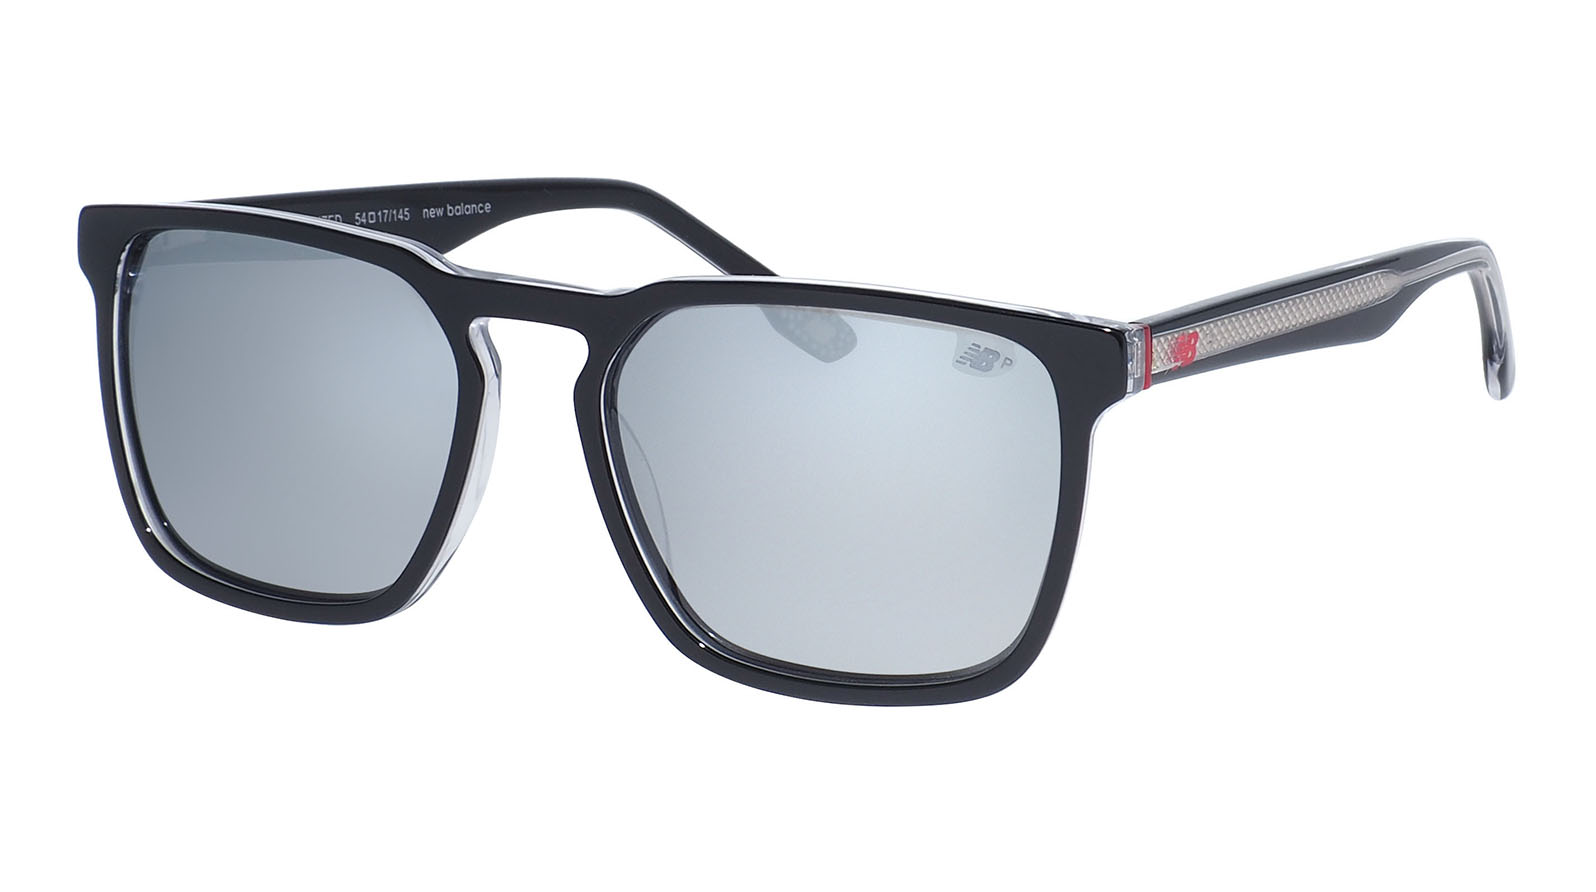 New Balance 6069 1 grand voyage солнцезащитные очки с поляризацией и уф защитой